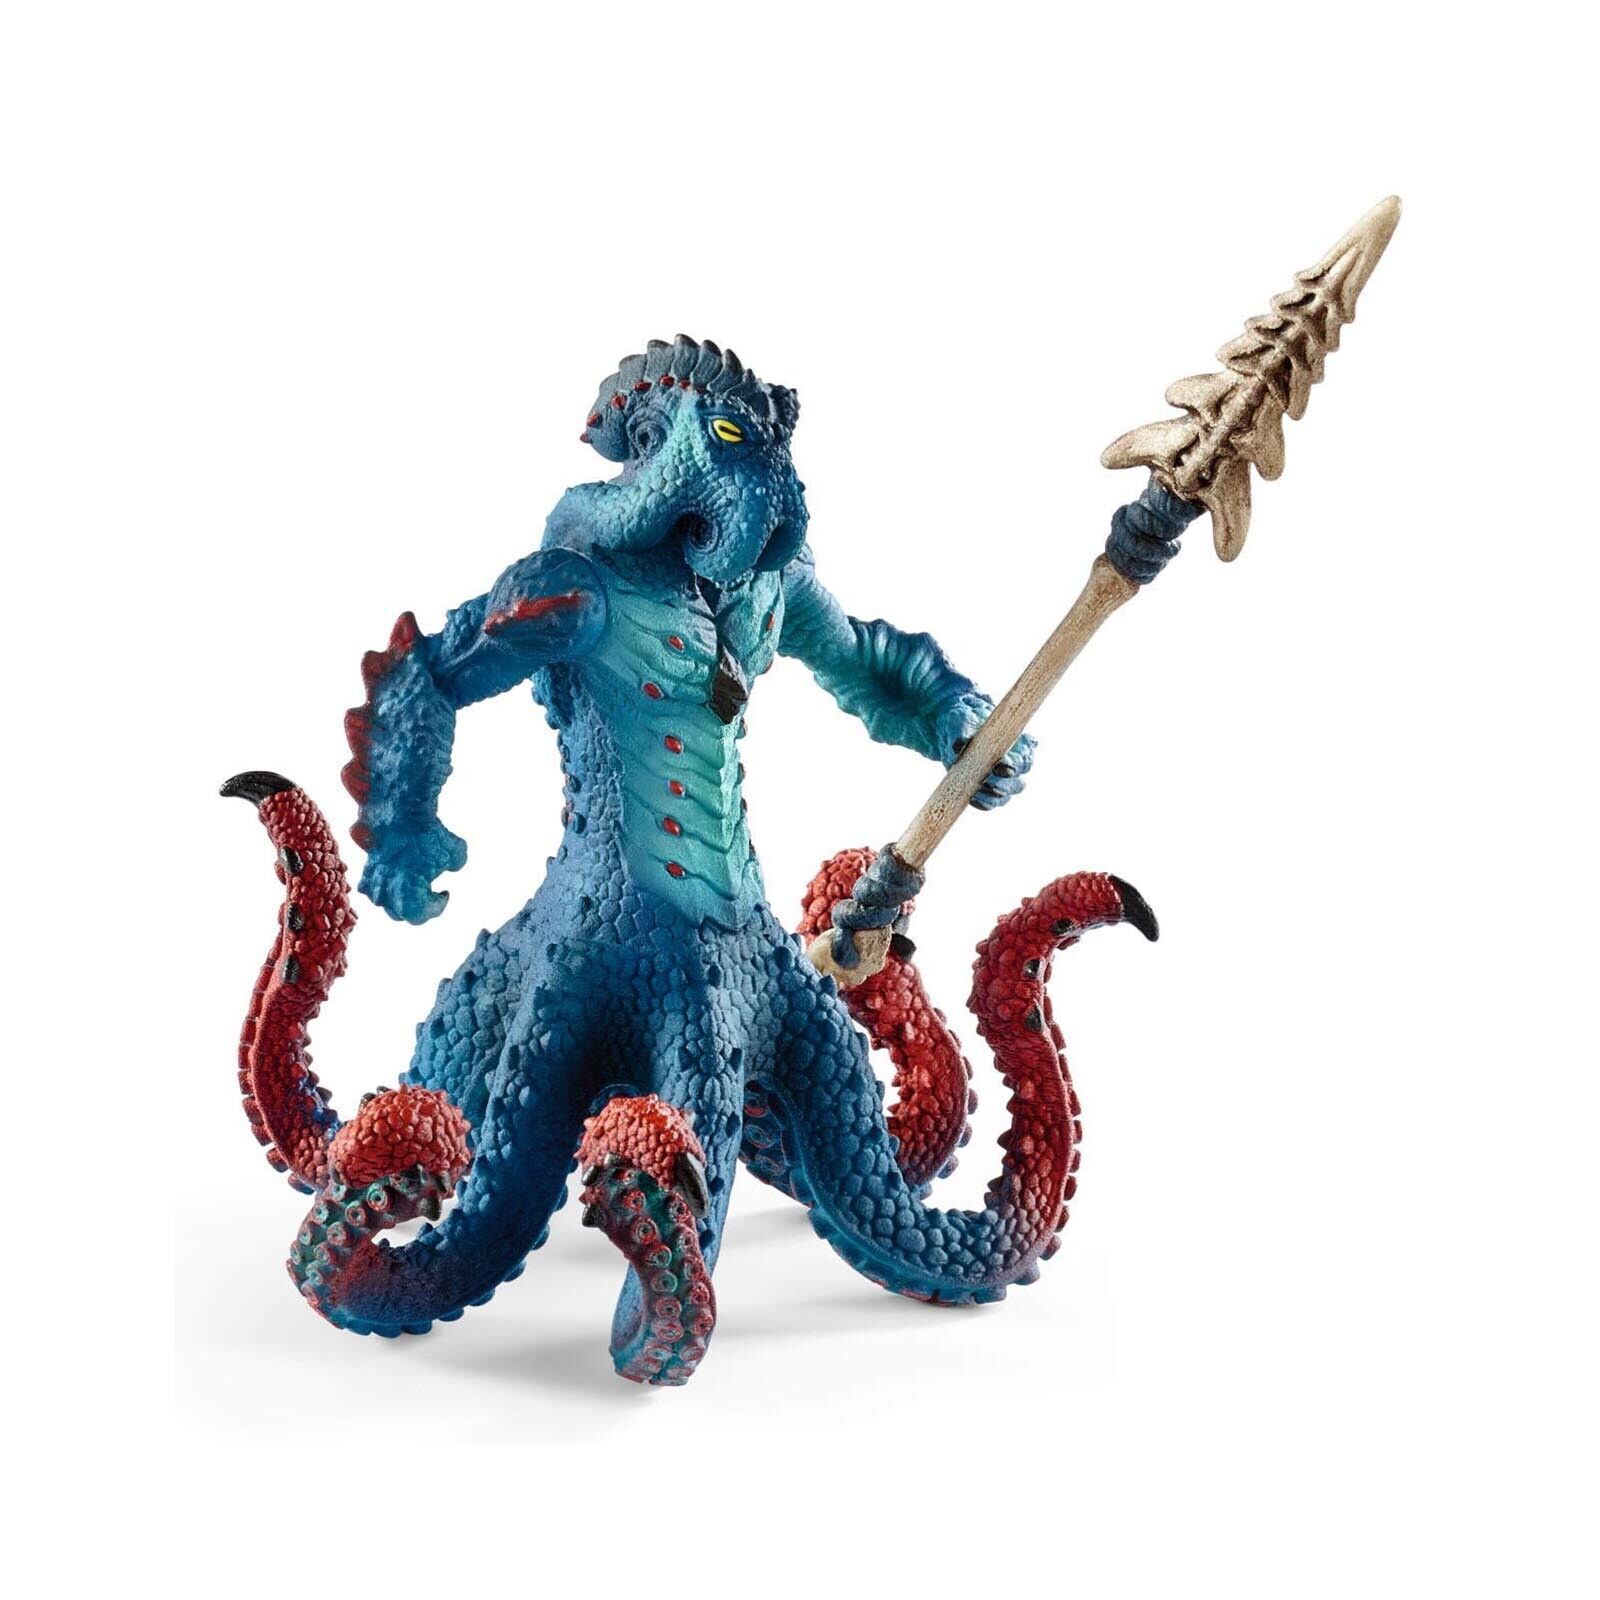 Schleich Monster Kraken With Weapon Eldrador Creatures Fantasy Figure NEW